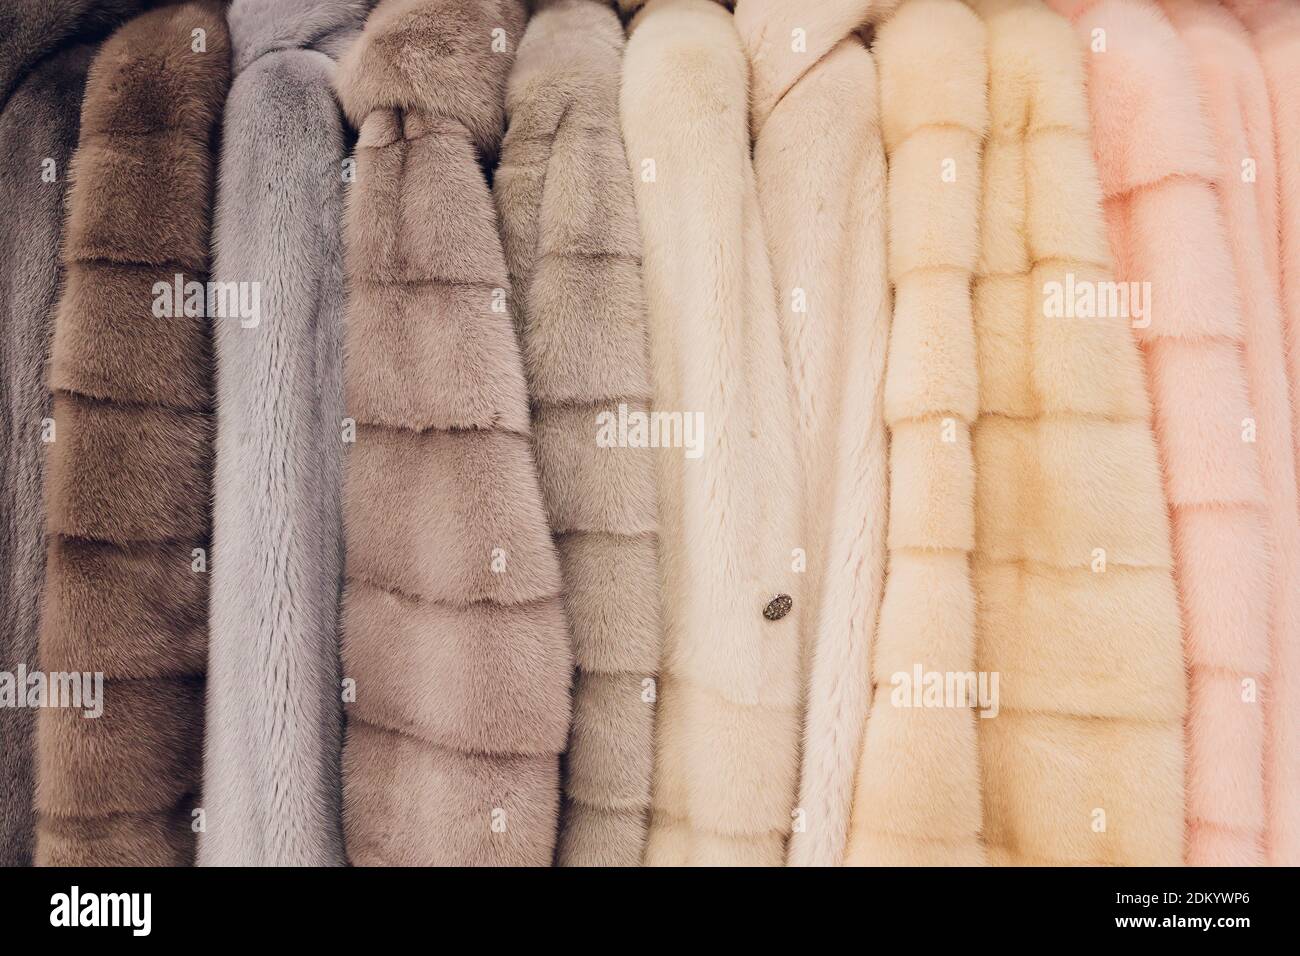 Abrigos de lujo. de color gris, marrón, perla en escaparate de mercado. El mejor regalo para mujeres es el abrigo de la mink. Ropa exterior. De cerca Fotografía